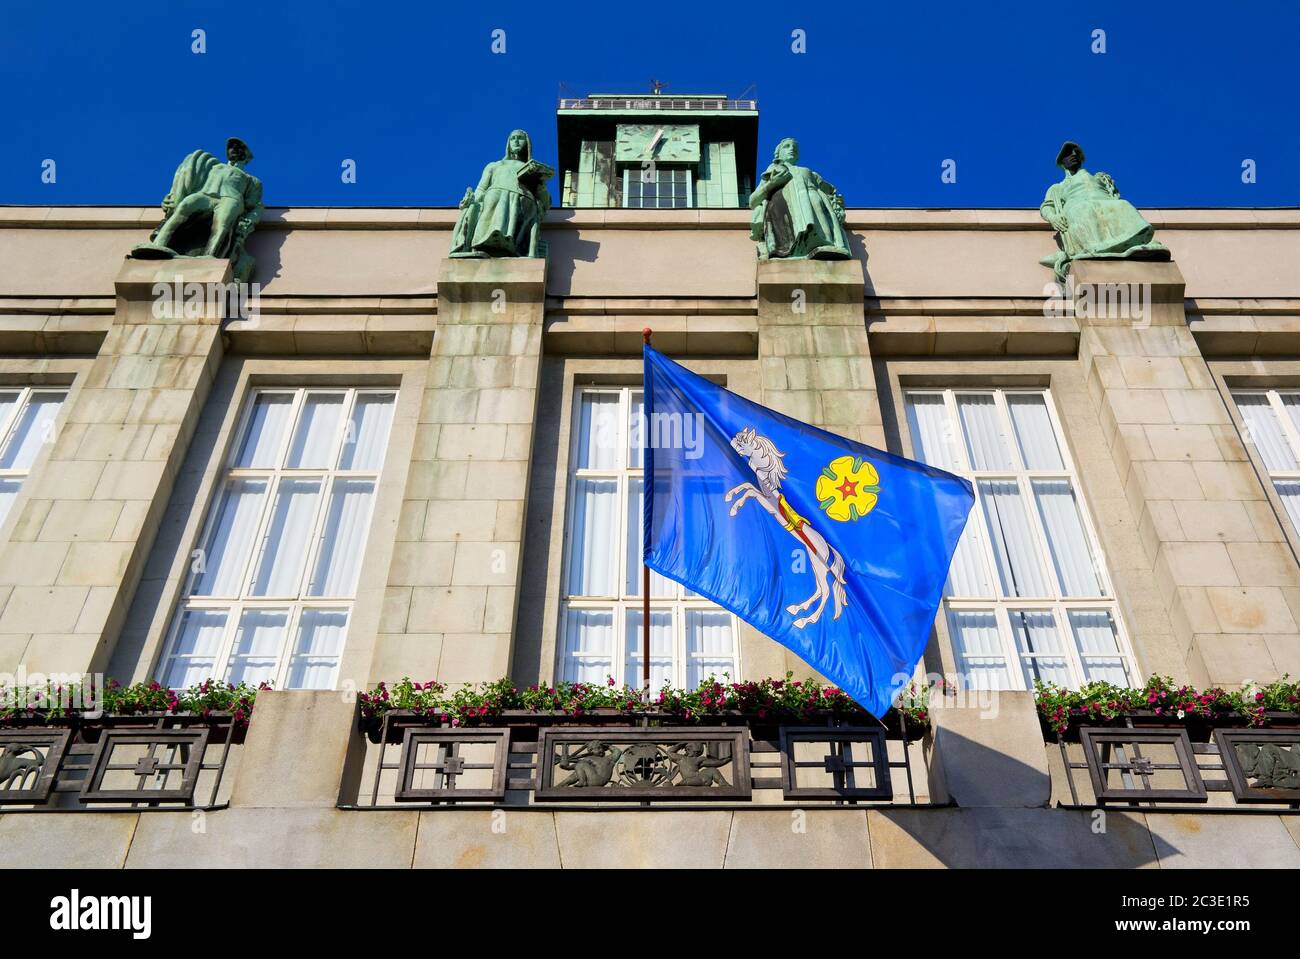 Tour d'observation de la mairie de la Nouvelle ville (Nova radnice), Ostrava, République Tchèque / Tchéquie - drapeau ondulé avec armoiries héraldiques de la ville Banque D'Images